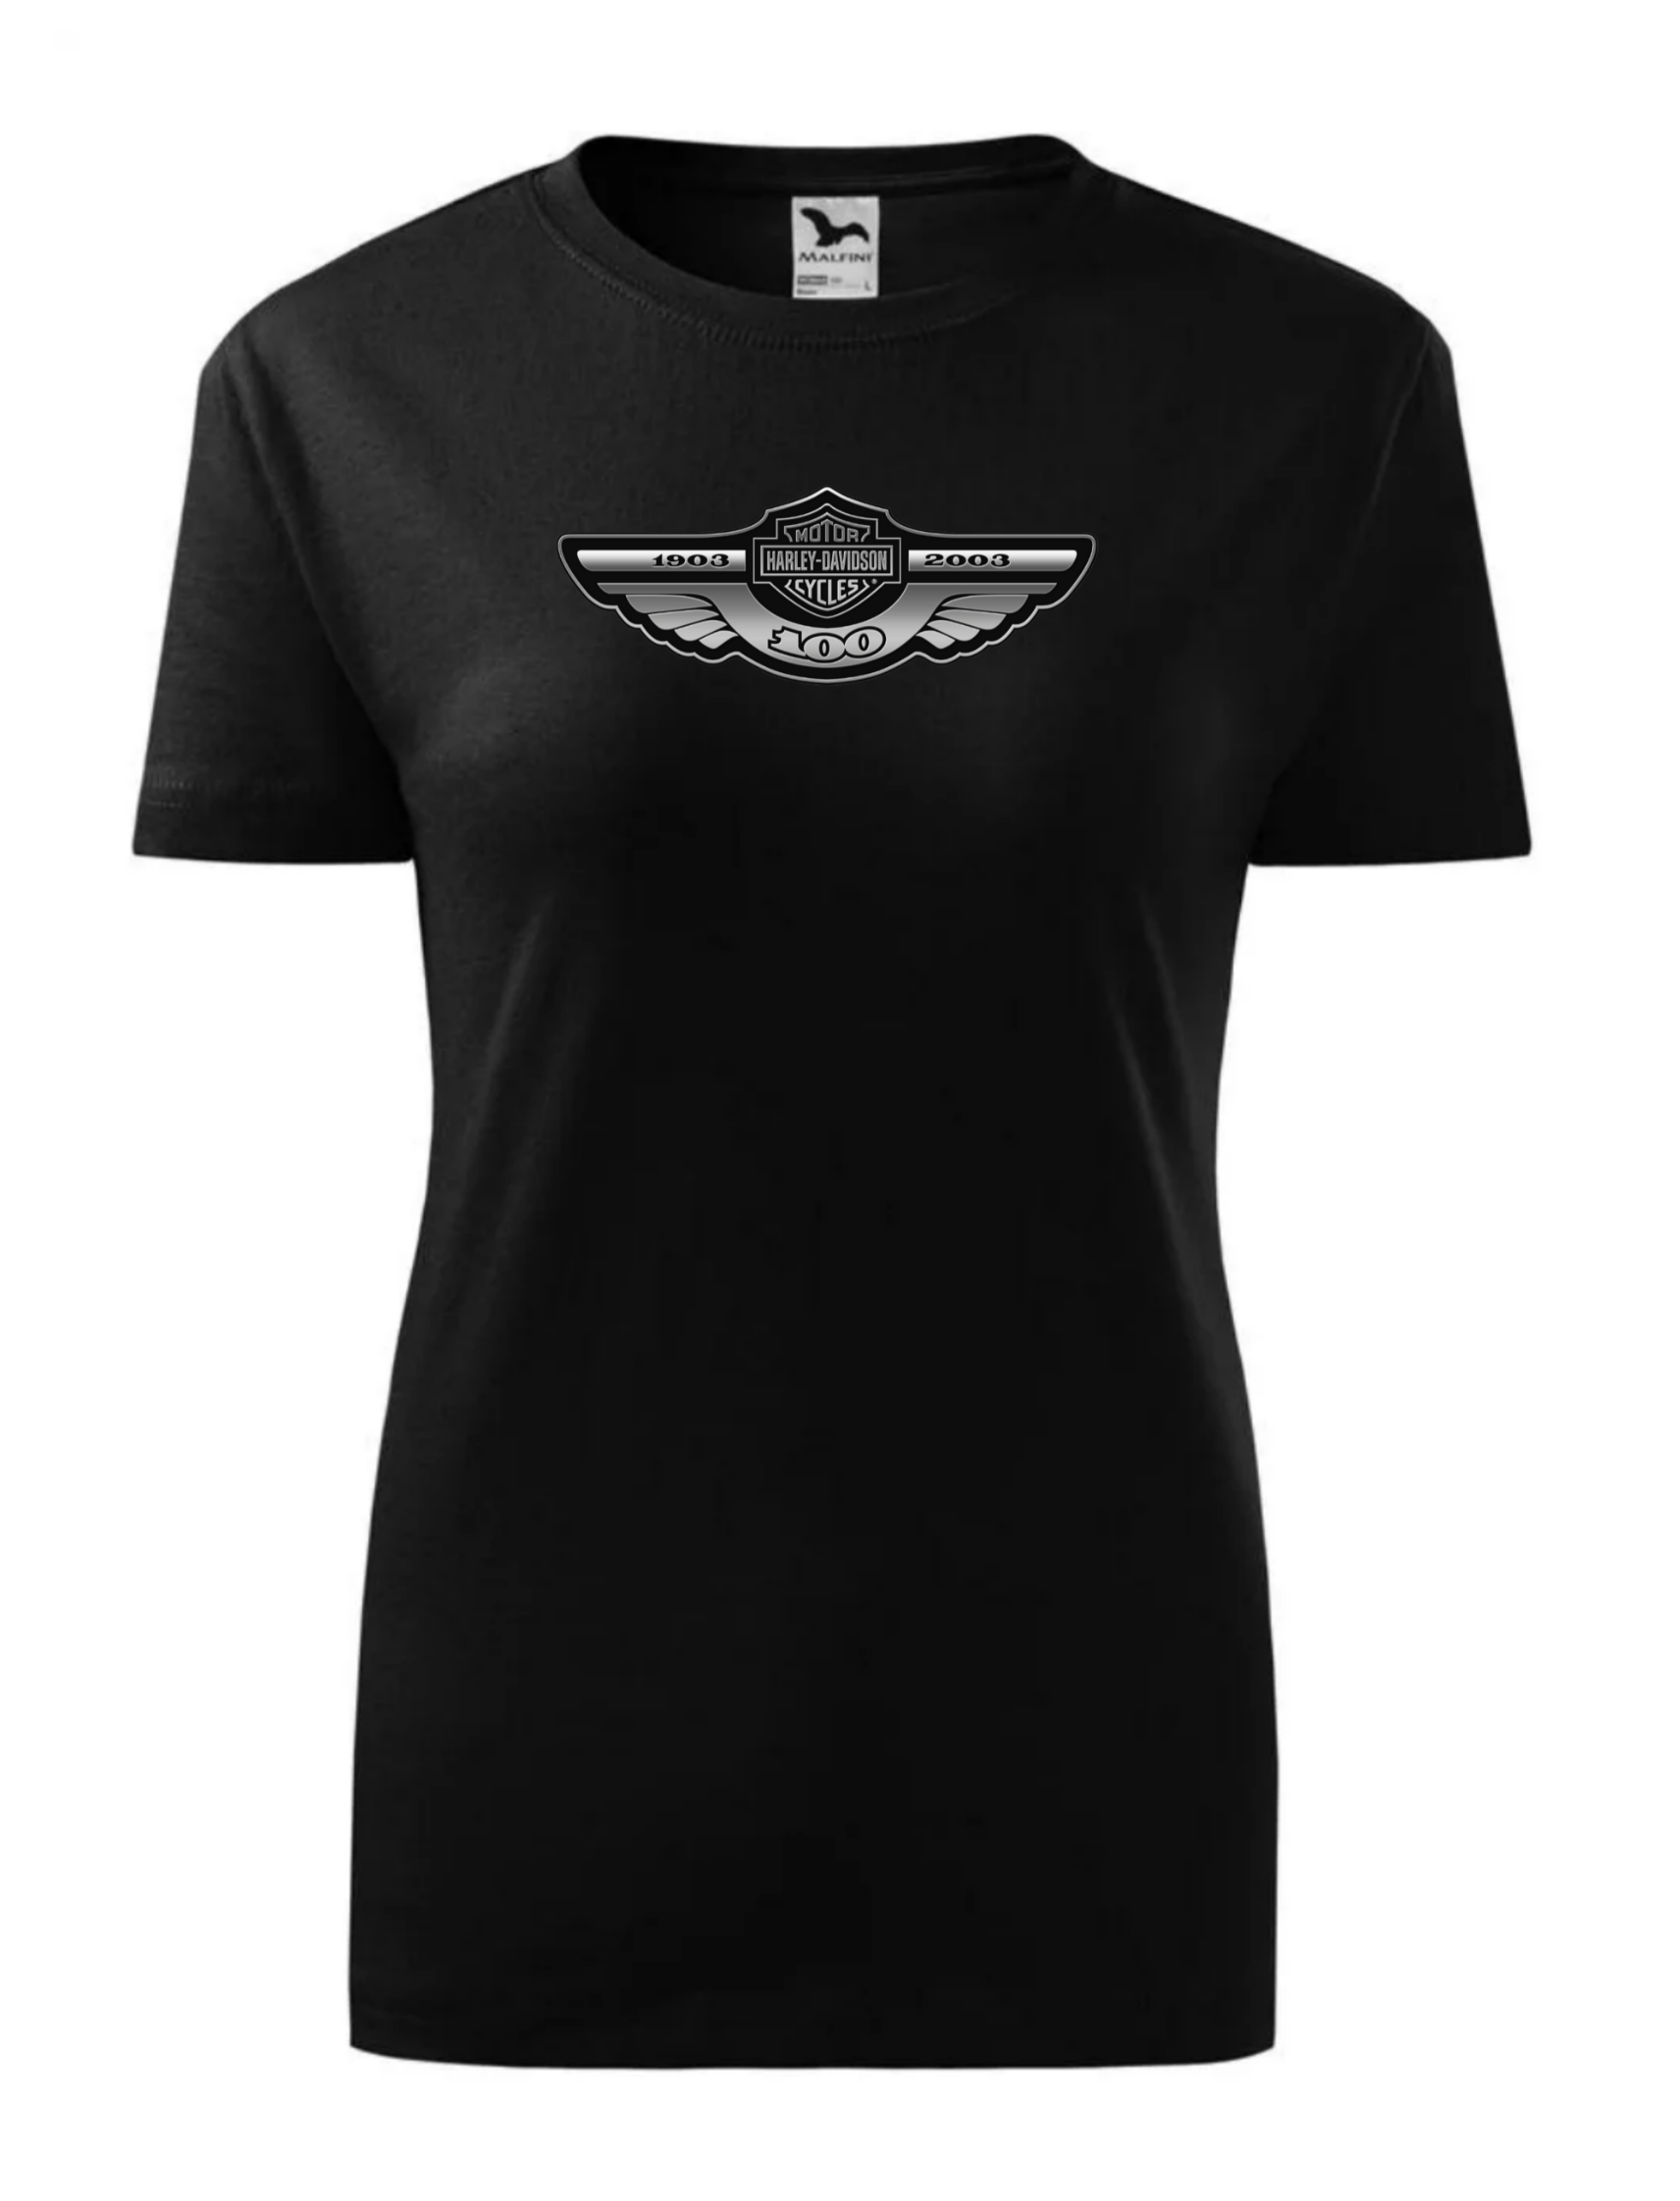 Dámské tričko s potiskem značky Harley Davidson 27